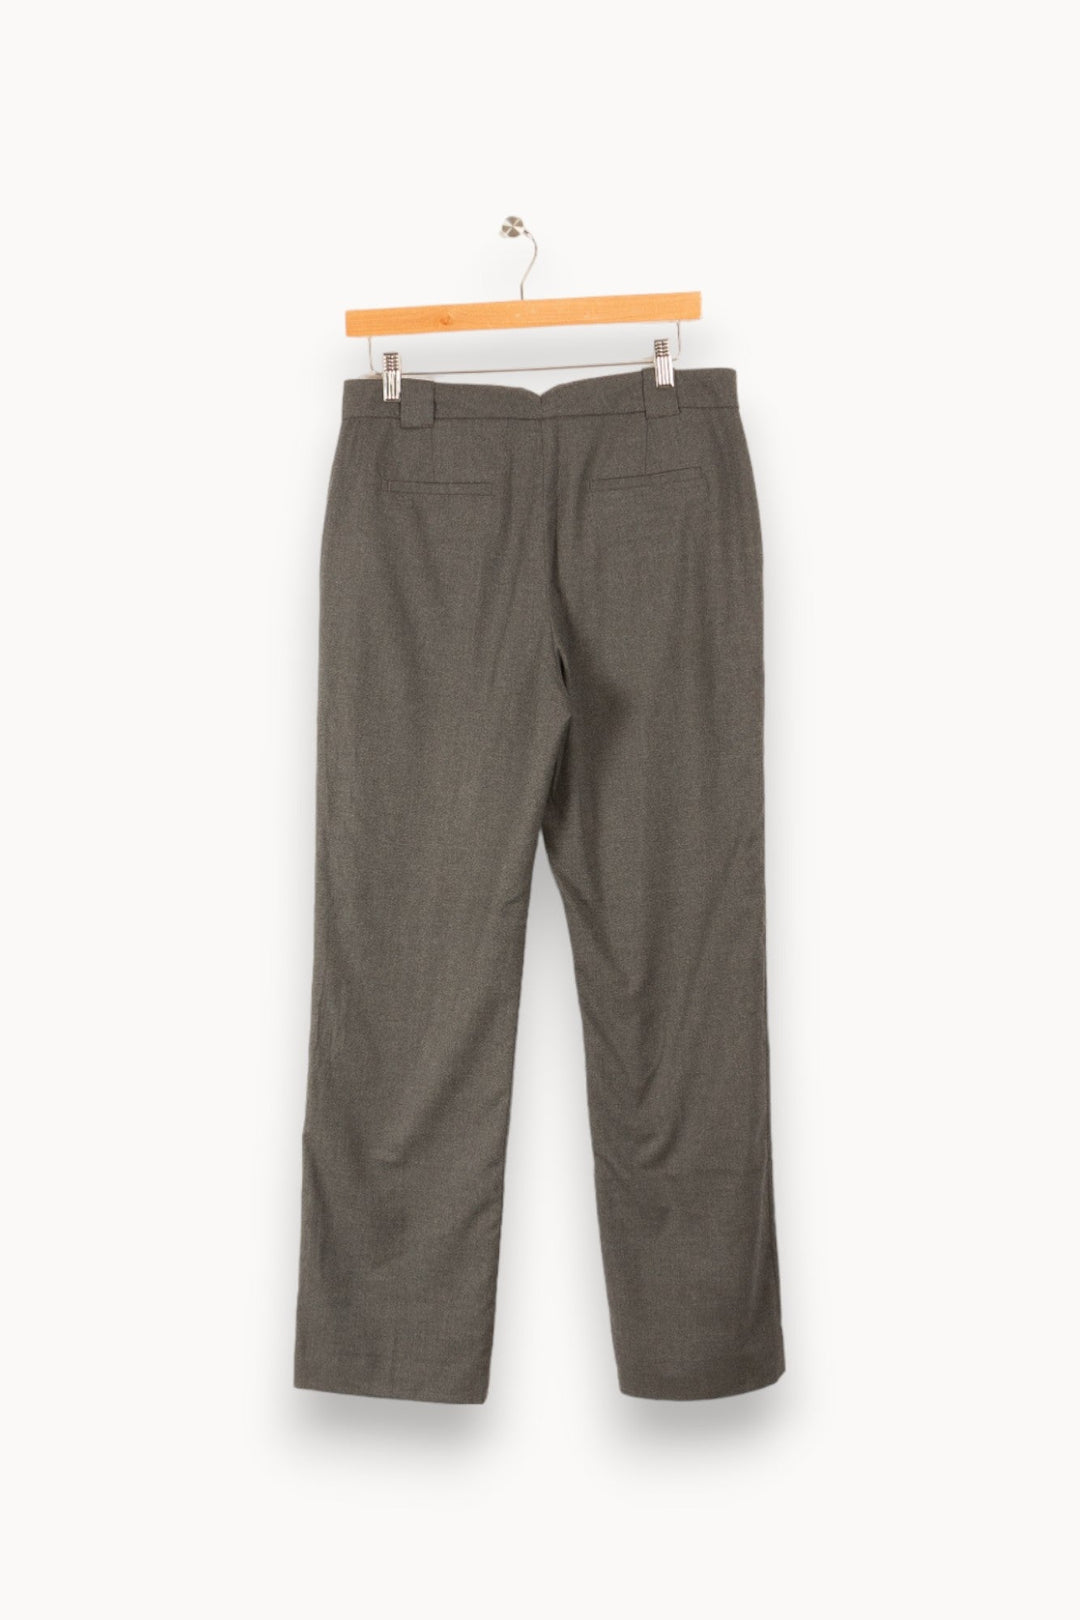 Pantalon gris - Taille L/40